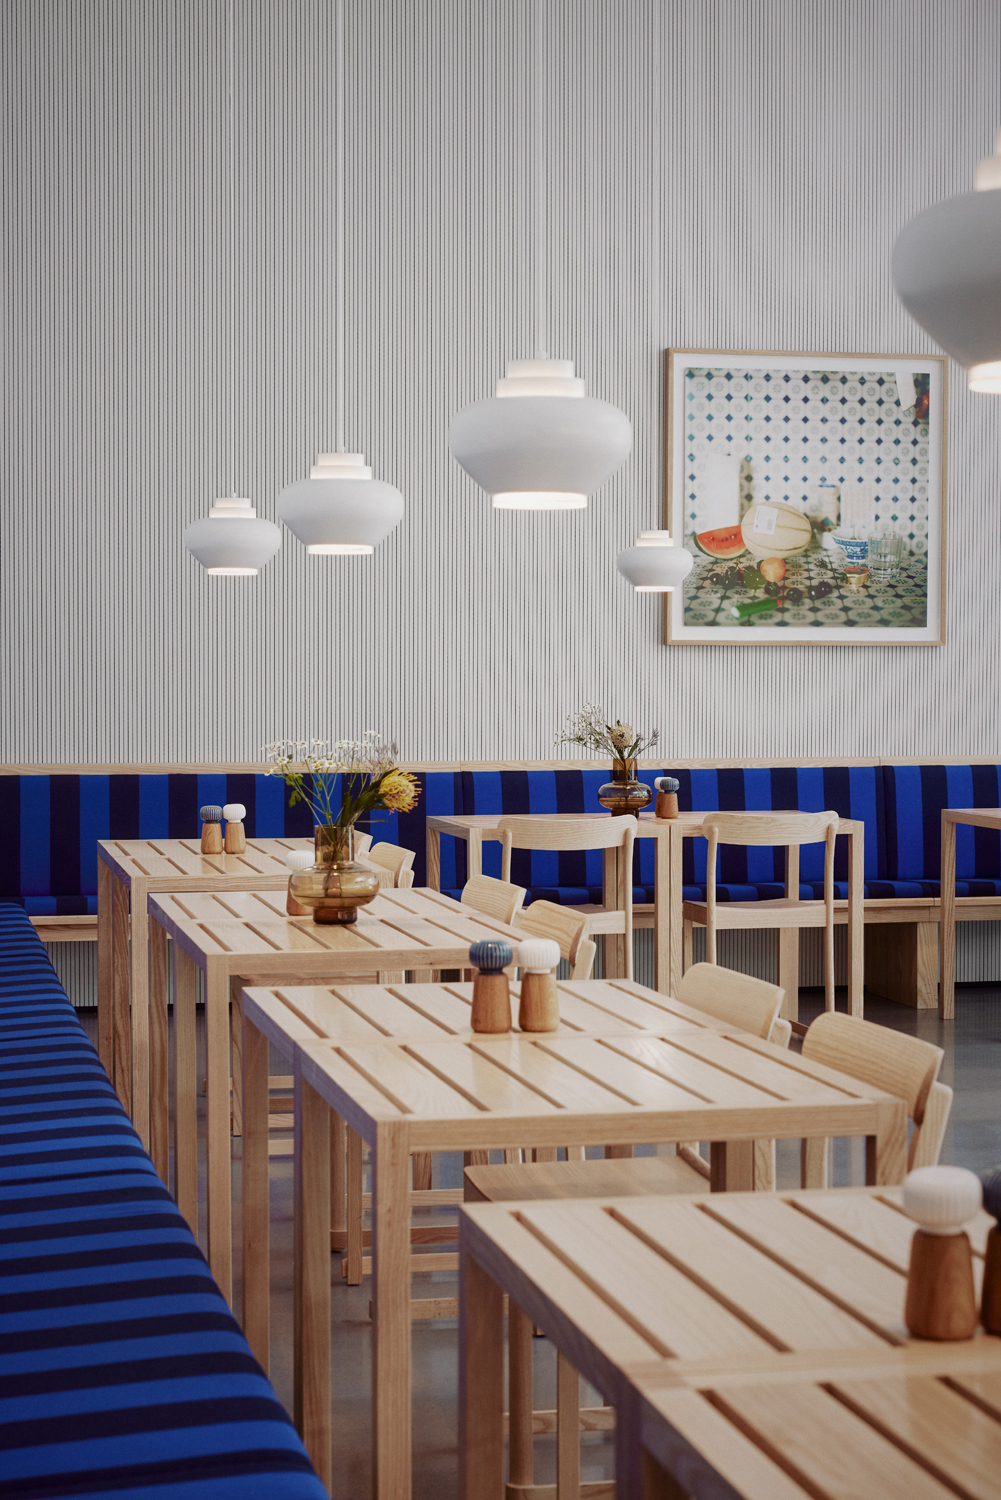 Finnish Design Shop Turku Finland interior decor restaurant